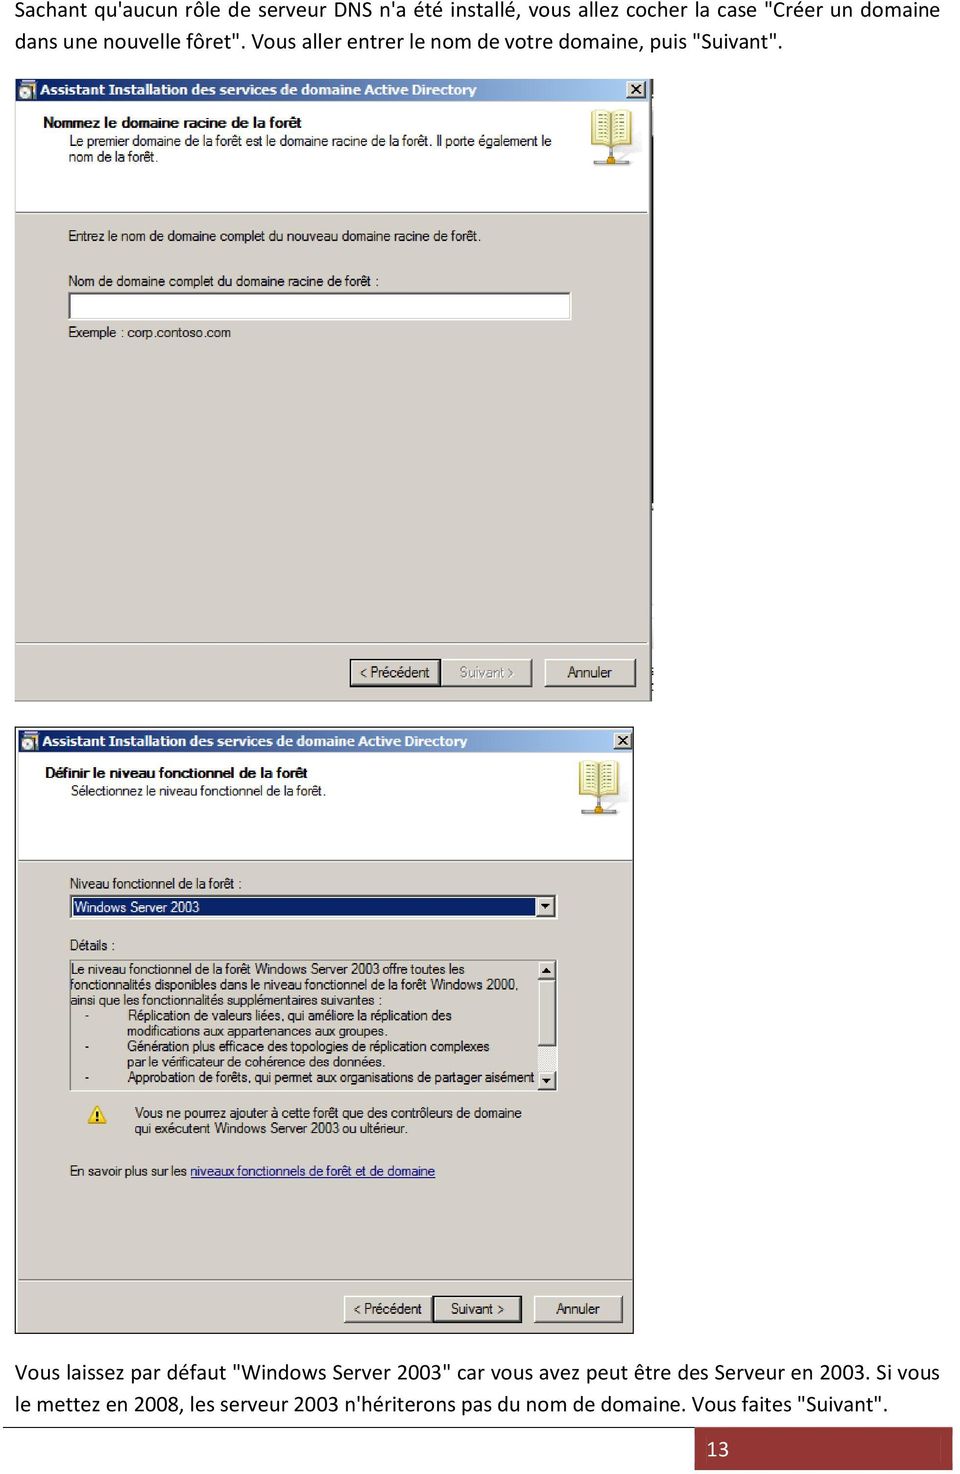 Vous laissez par défaut "Windows Server 2003" car vous avez peut être des Serveur en 2003.